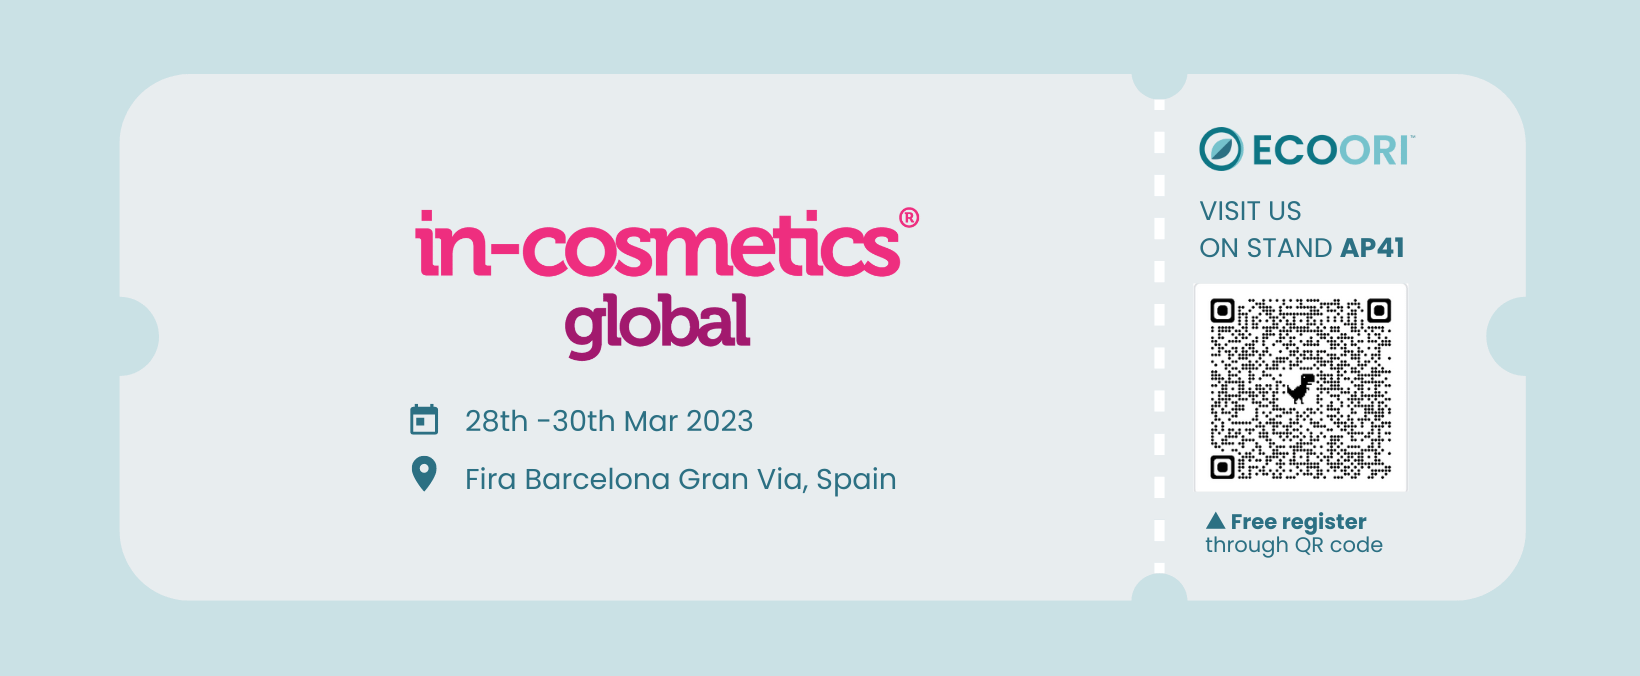 In-cosmetics-global-2023